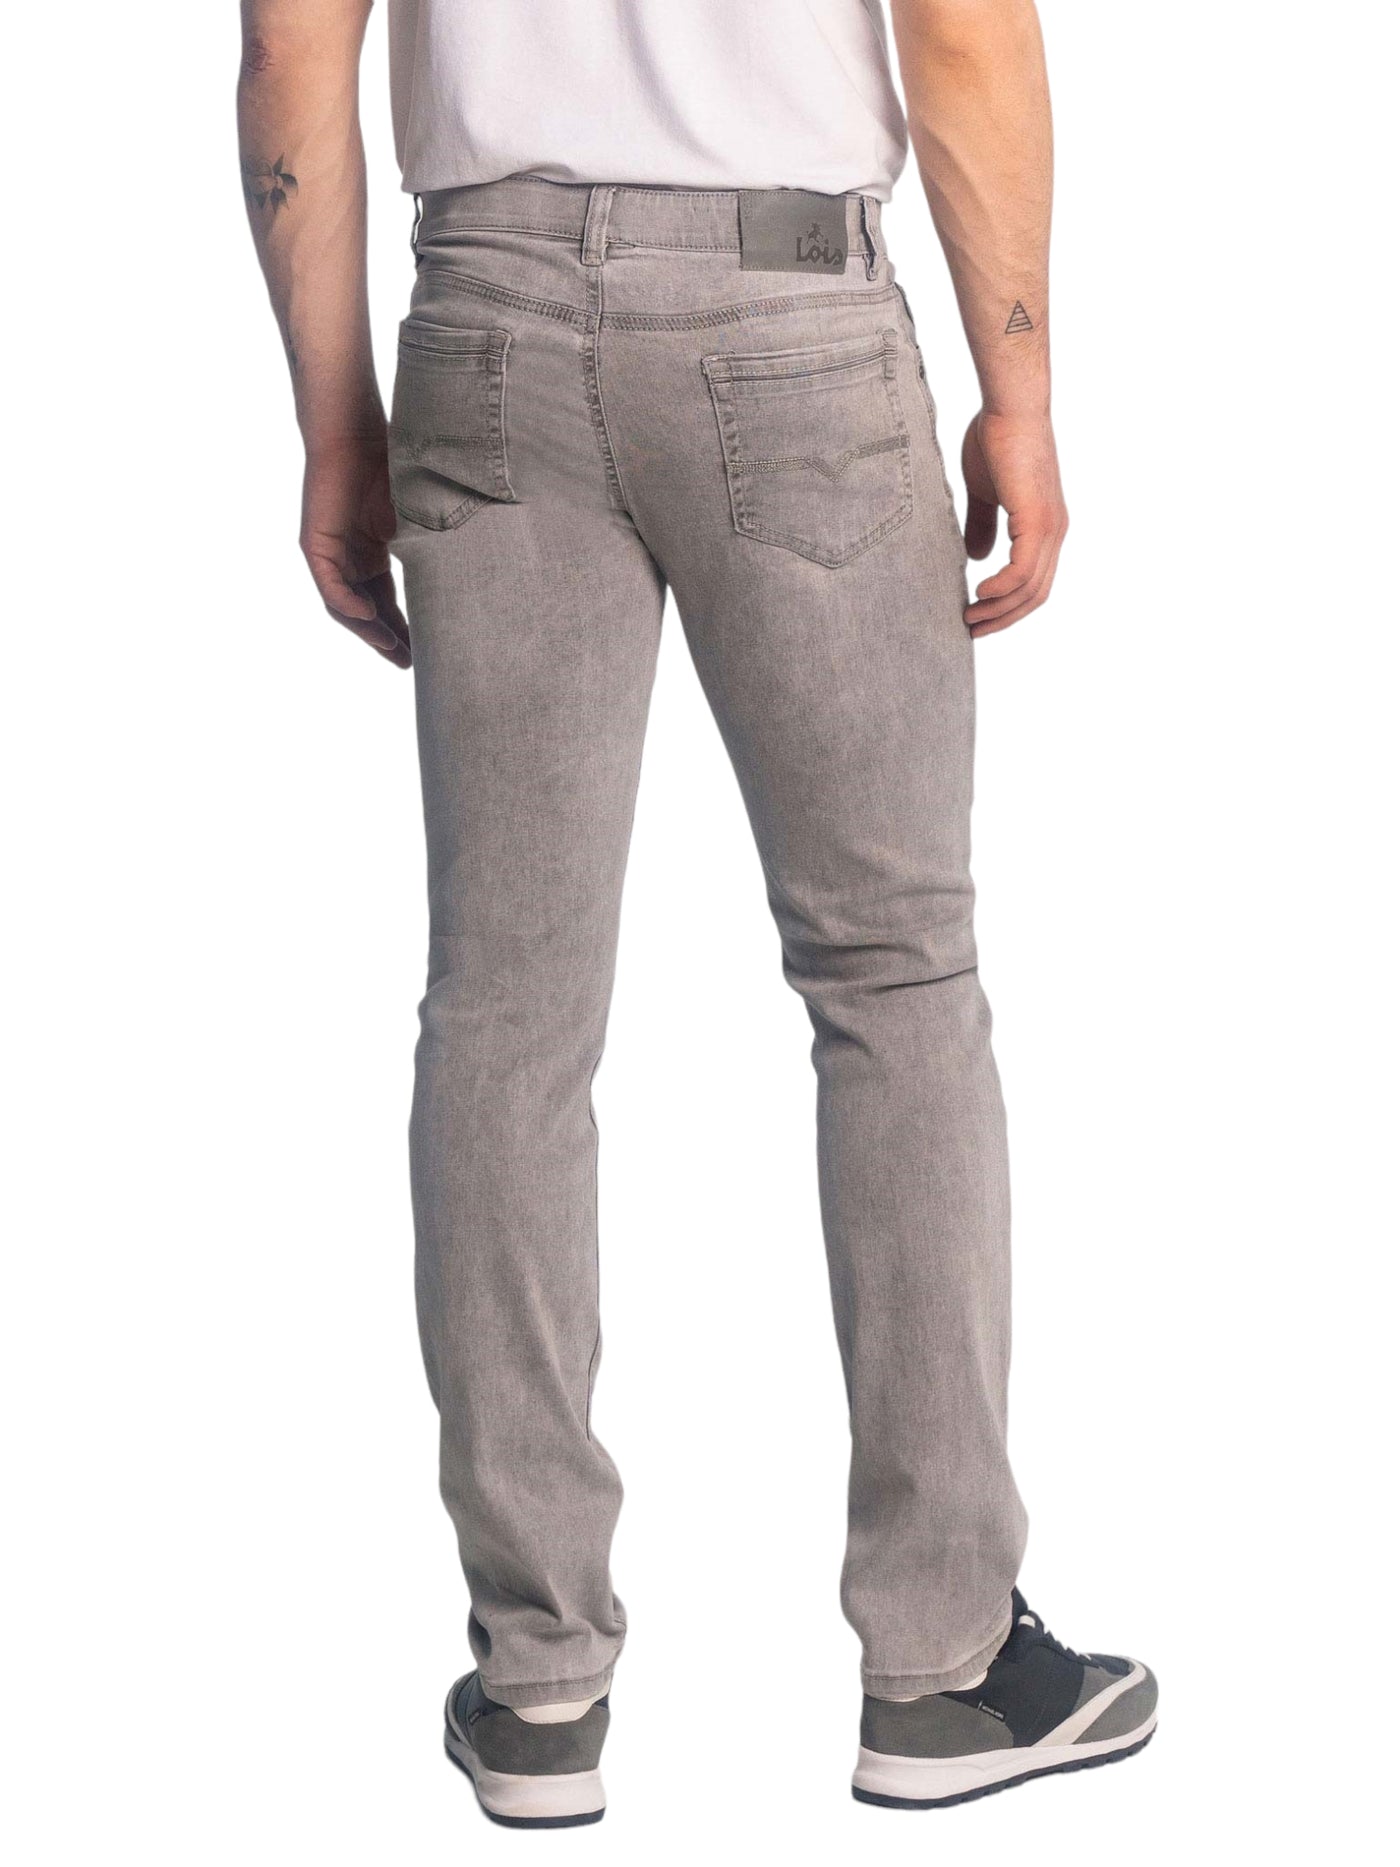 Jeans gris délavé extensible coupe ajustée